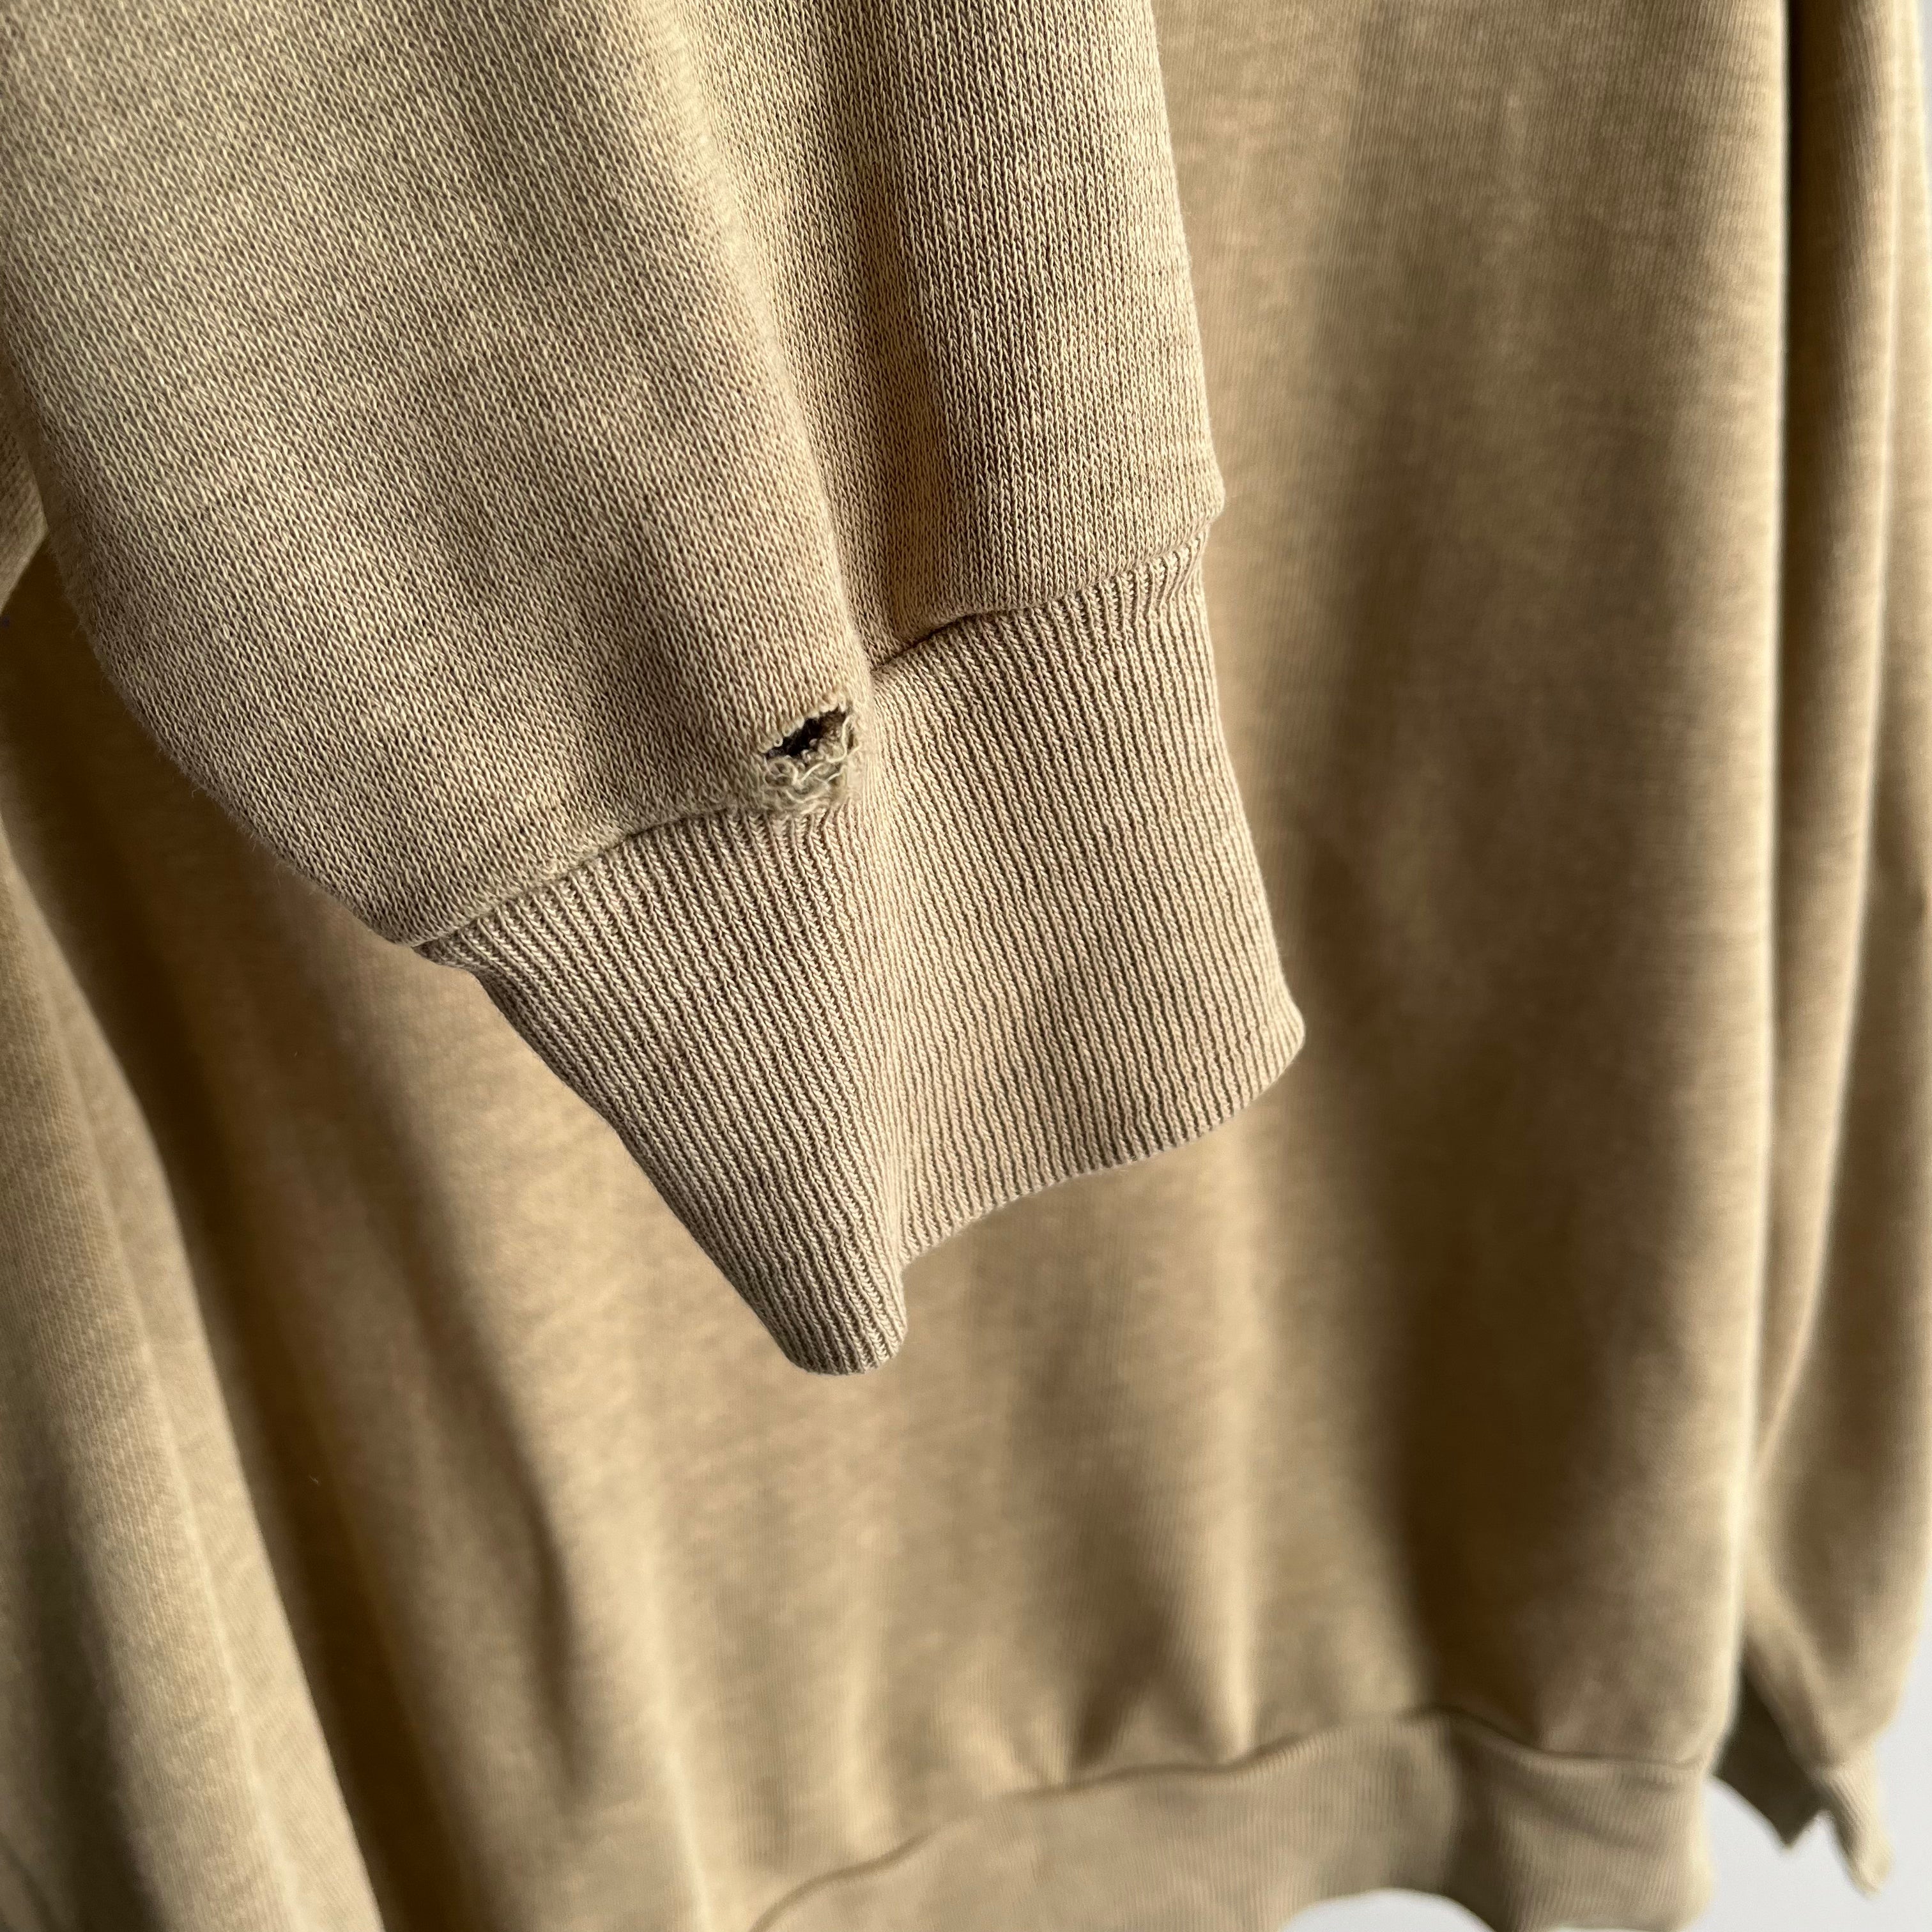 1970s Spruce Khaki V-Neck Sweatshirt